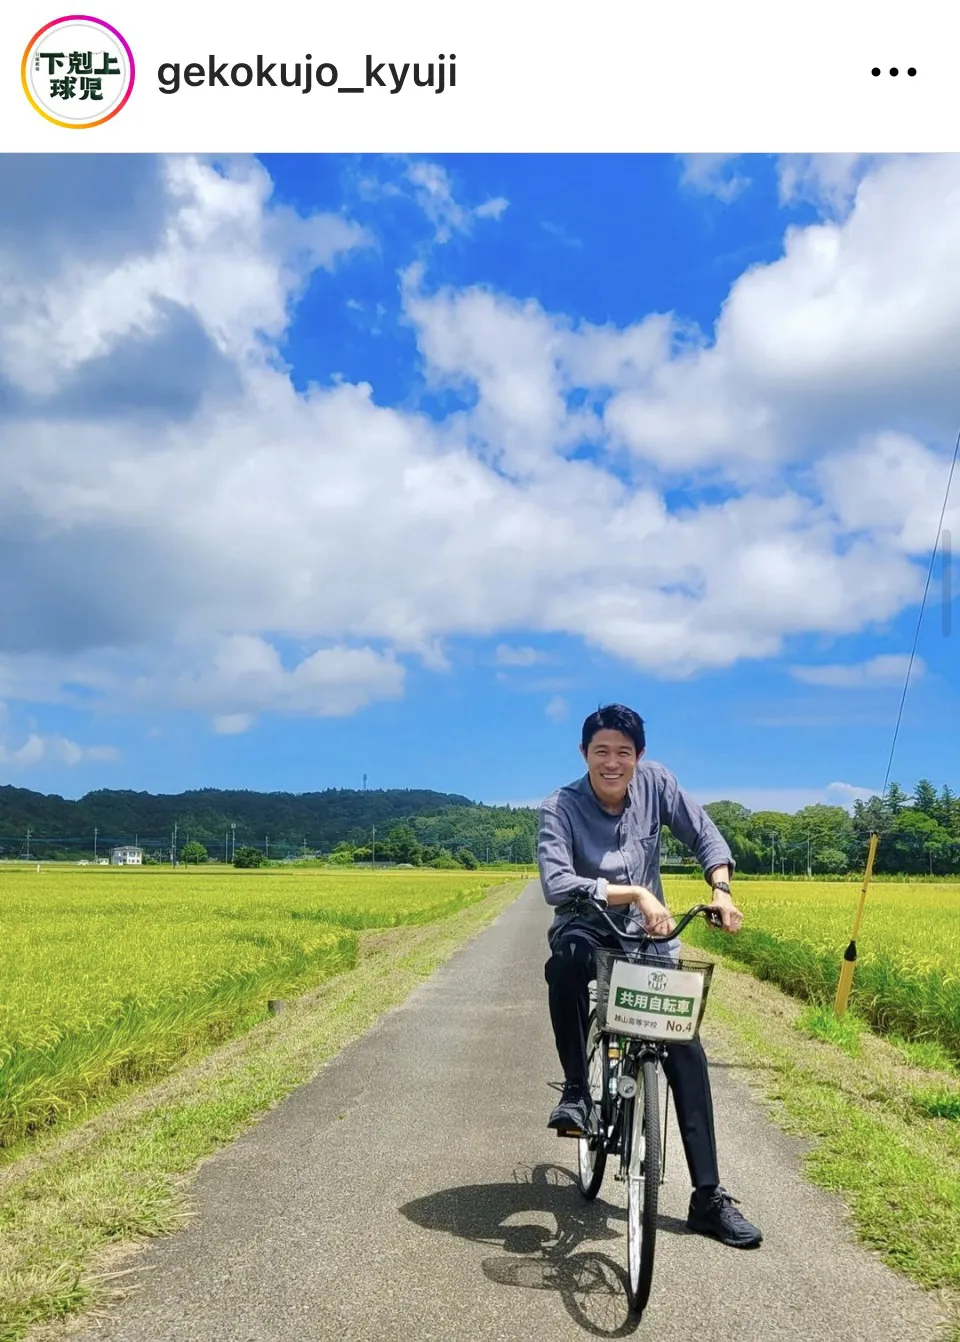 【写真】鈴木亮平がママチャリに乗って爽やかな笑顔を見せる姿がかっこよすぎる